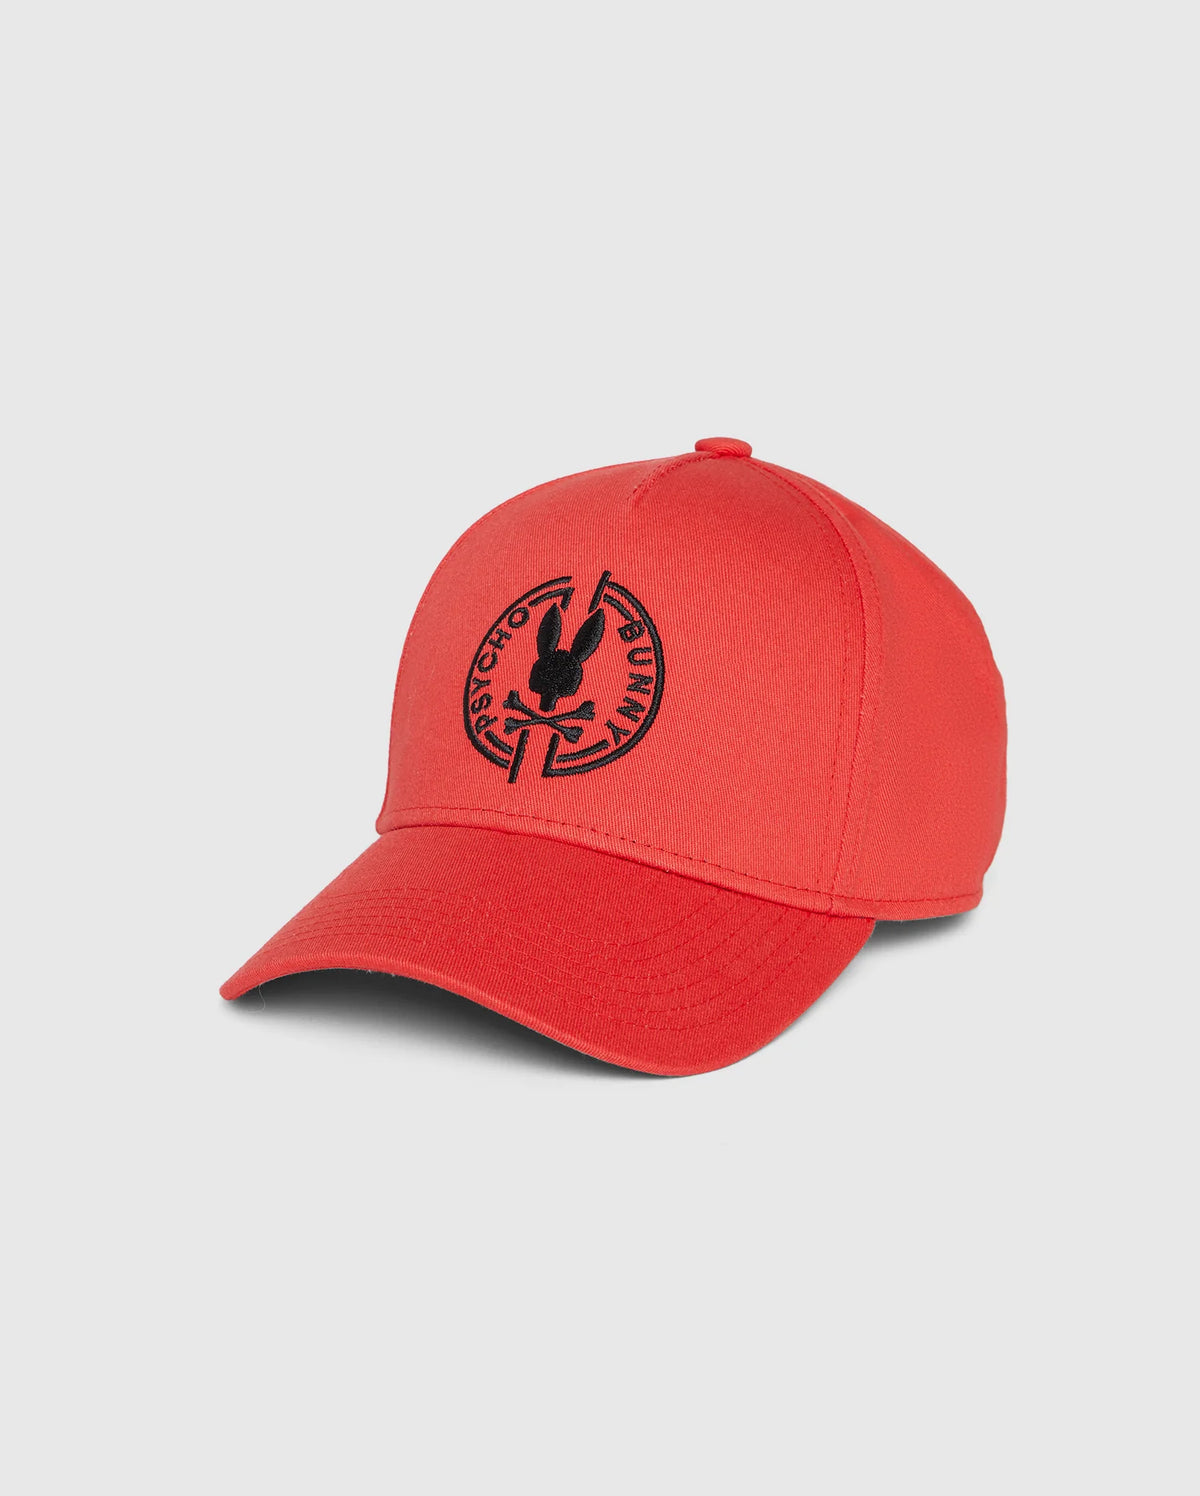 Santa Fe Baseball Cap - Red